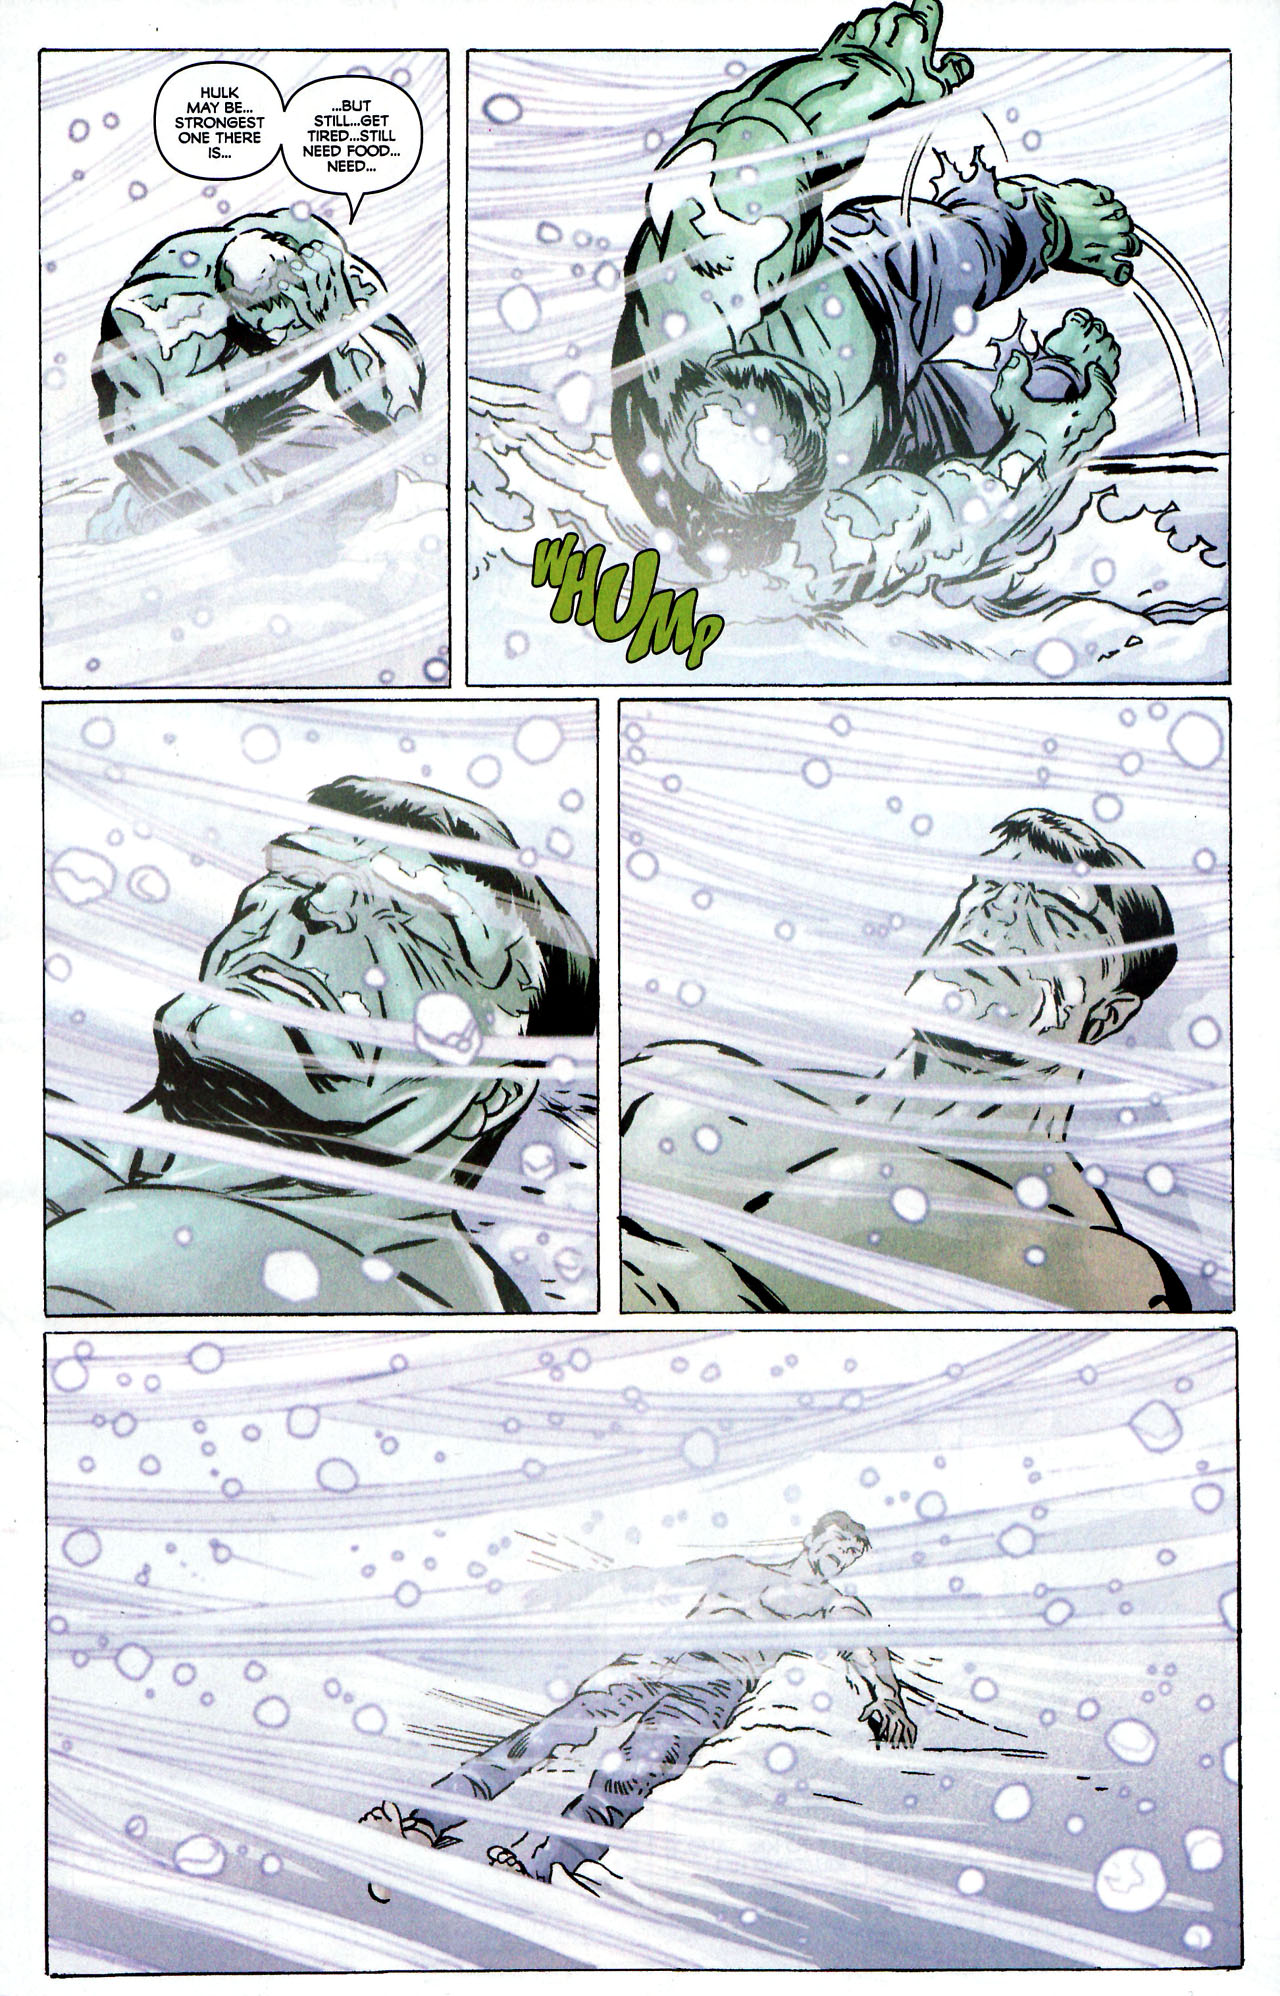 Read online Hulk vs. Fin Fang Foom comic -  Issue # Full - 5